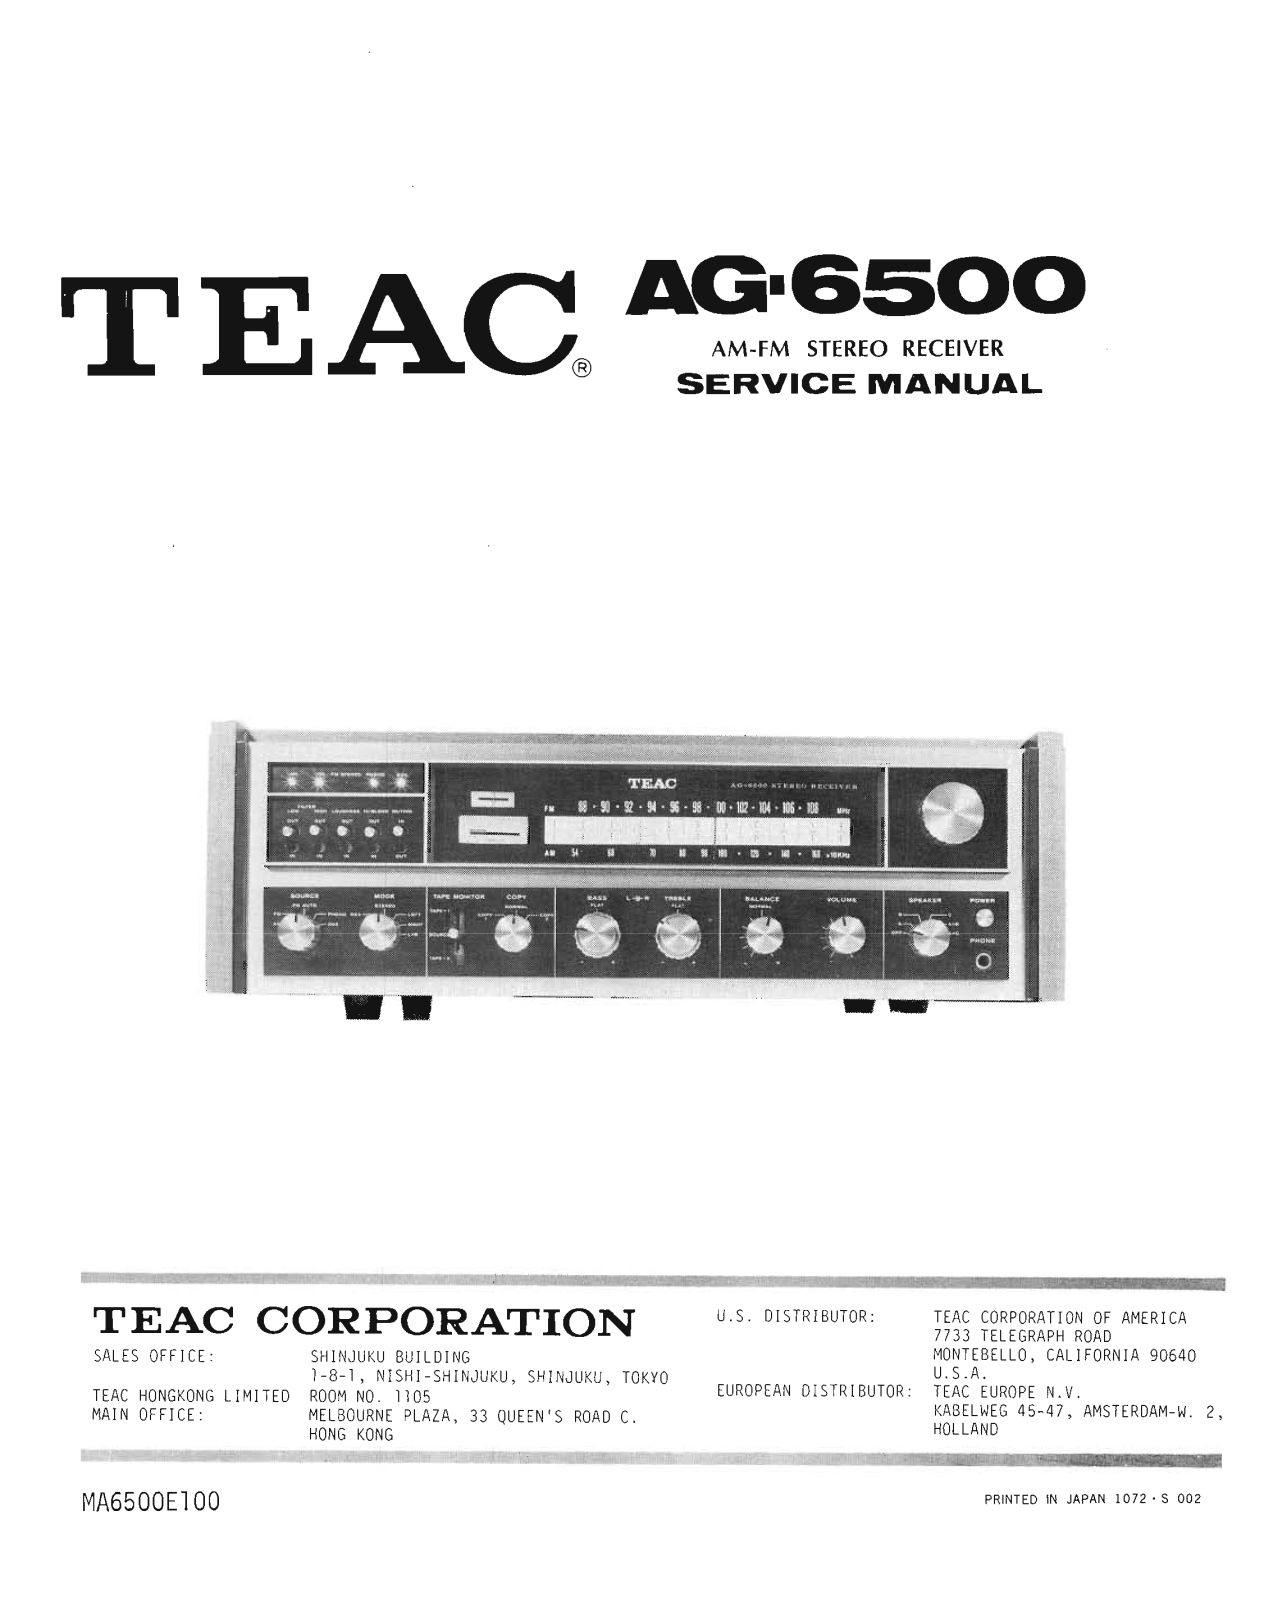 Teac AG-6500 Service Manual